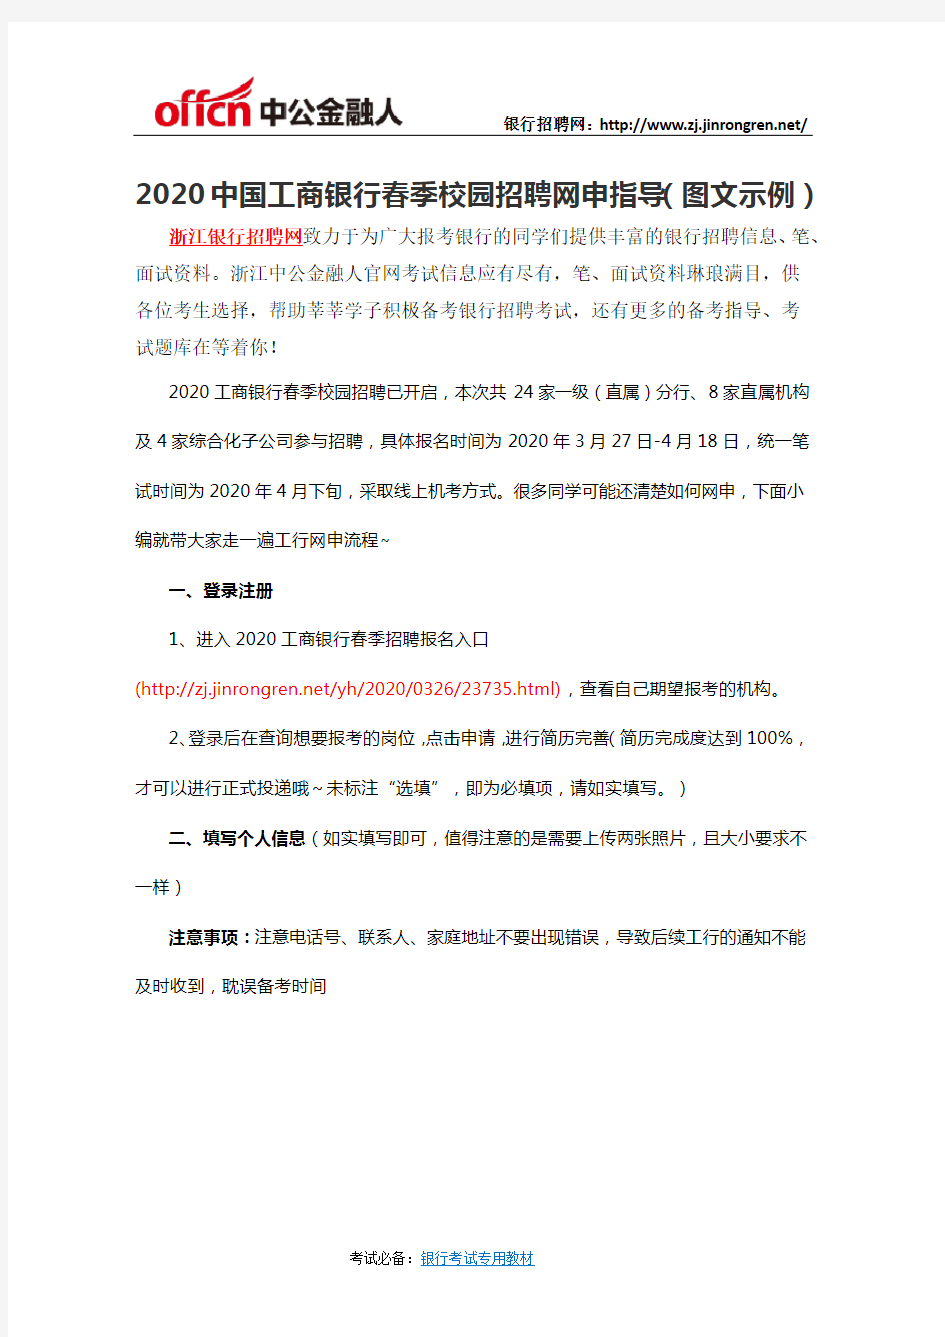 2020中国工商银行春季校园招聘网申指导(图文示例)